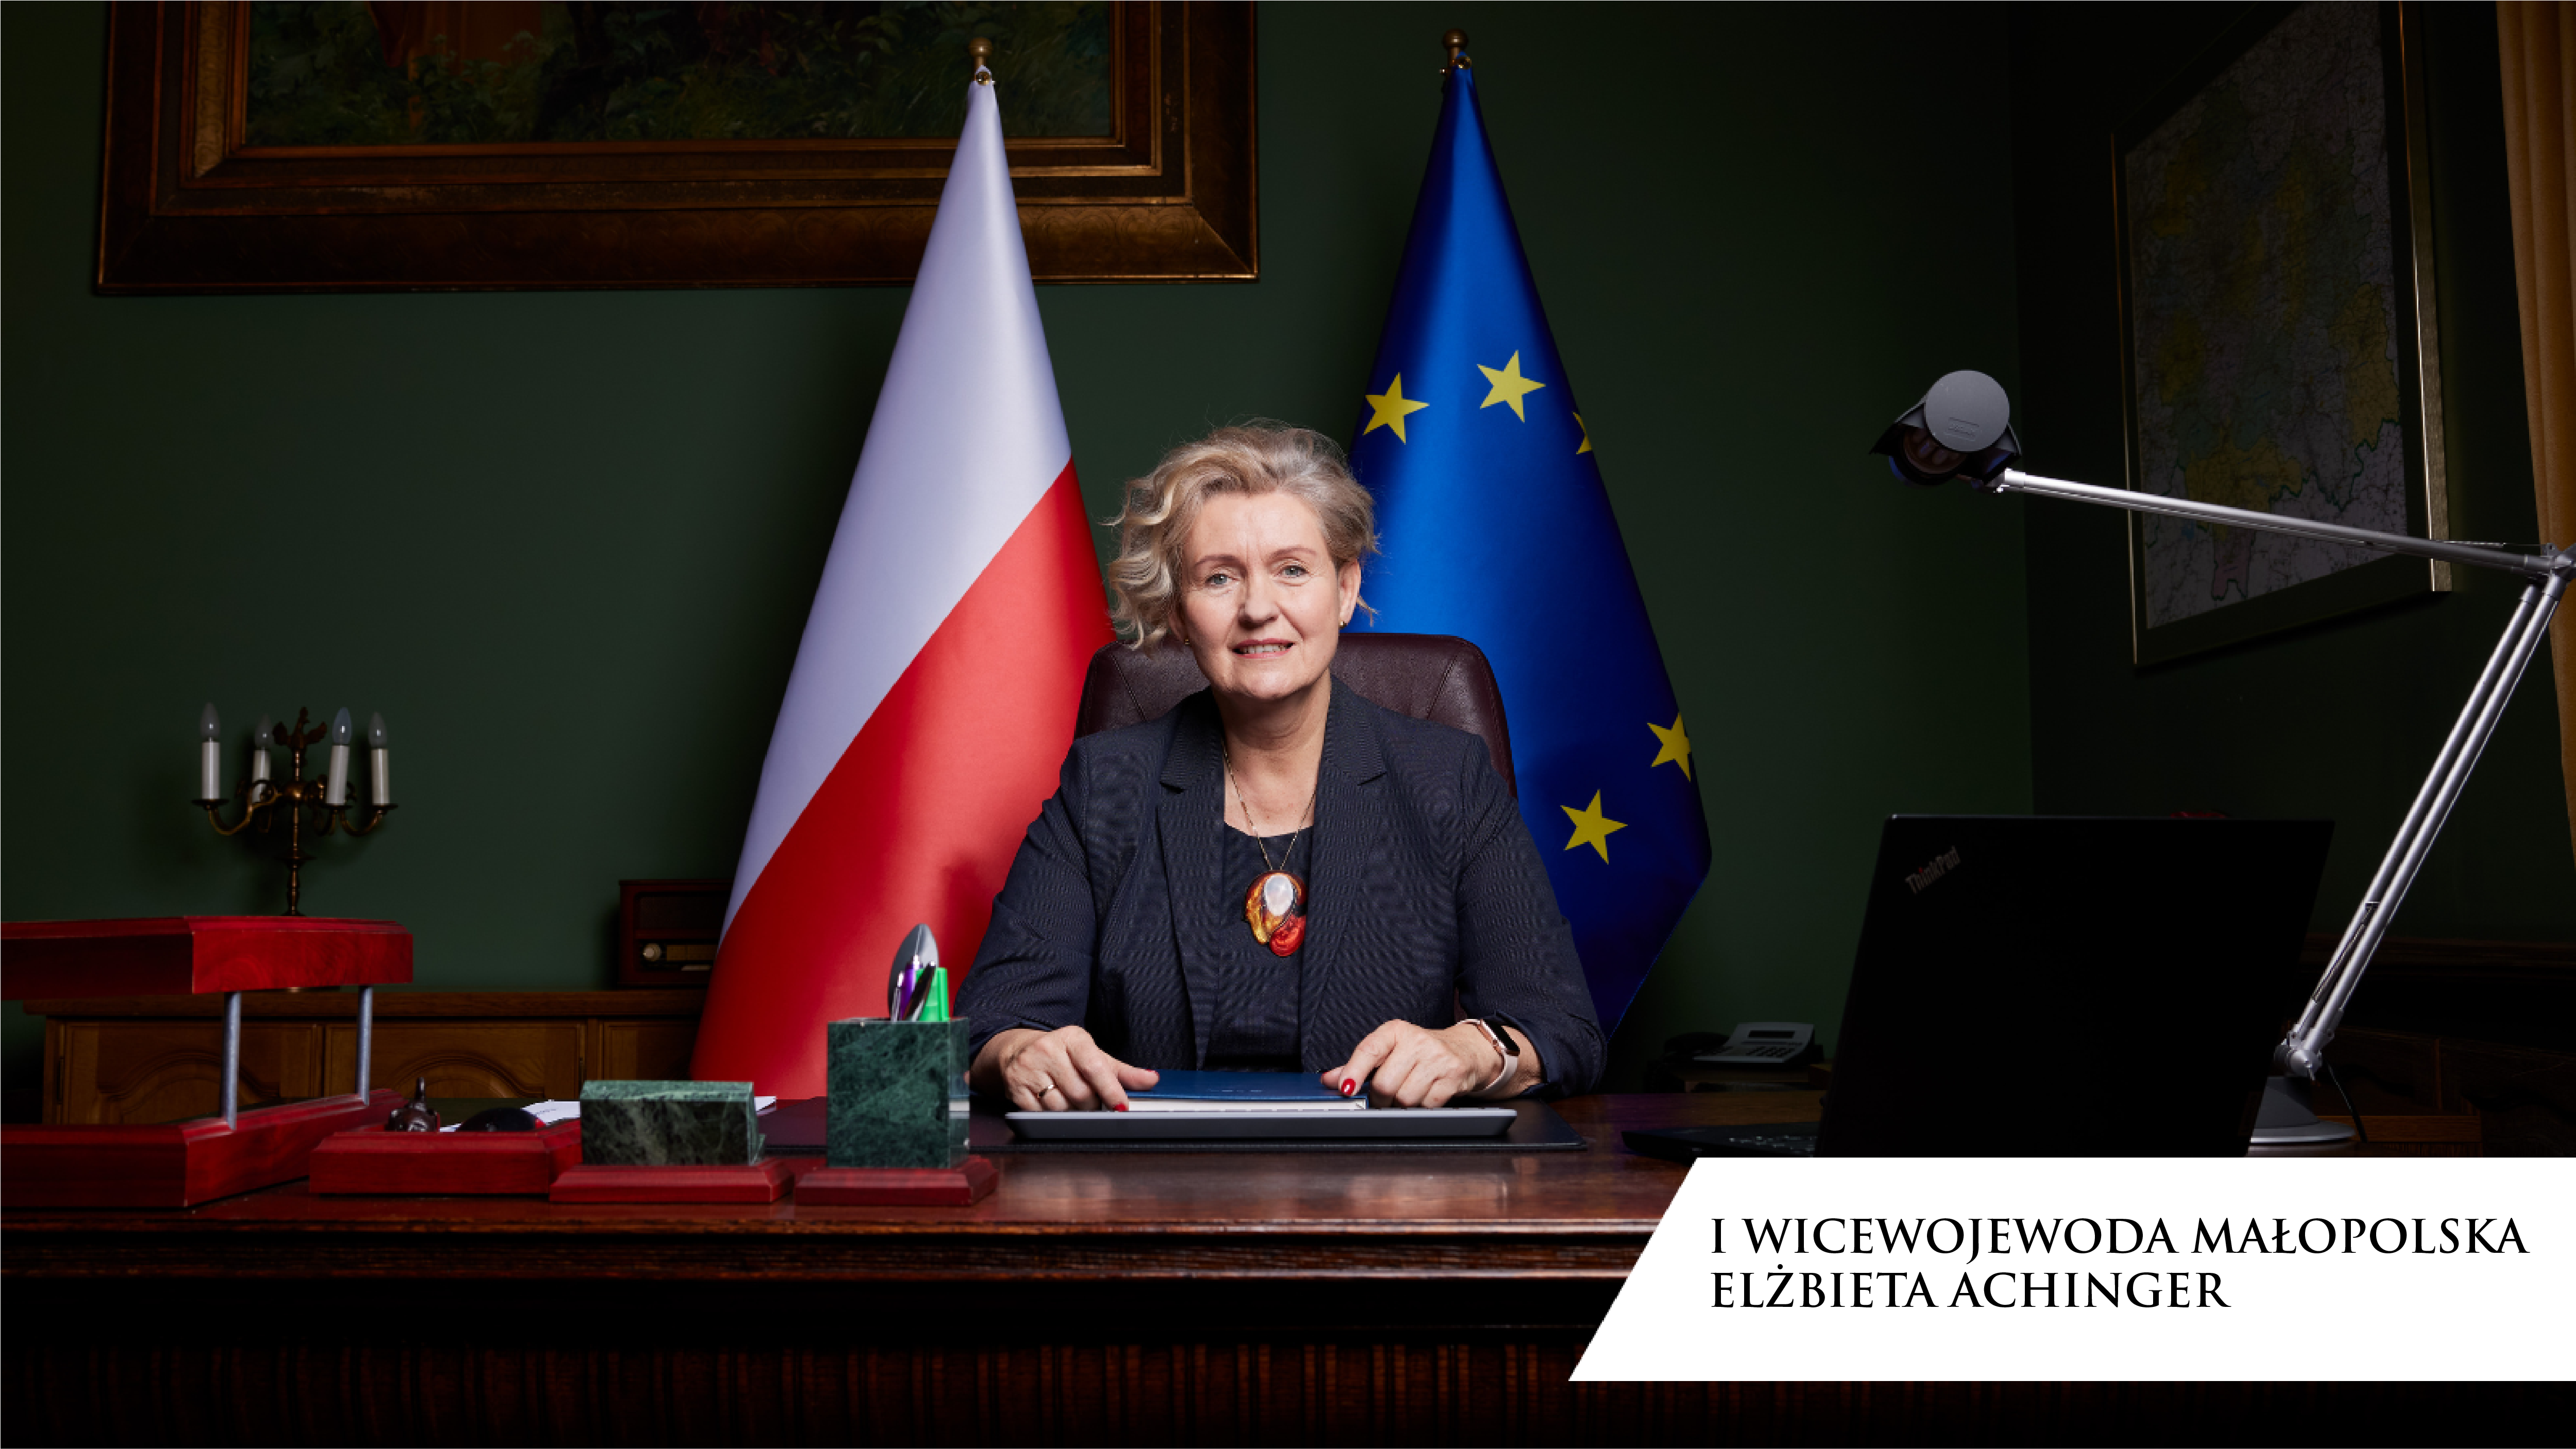 Elżbieta Achinger, I Wicewojewoda Małopolska siedząca przy biurku na tle flag Polski